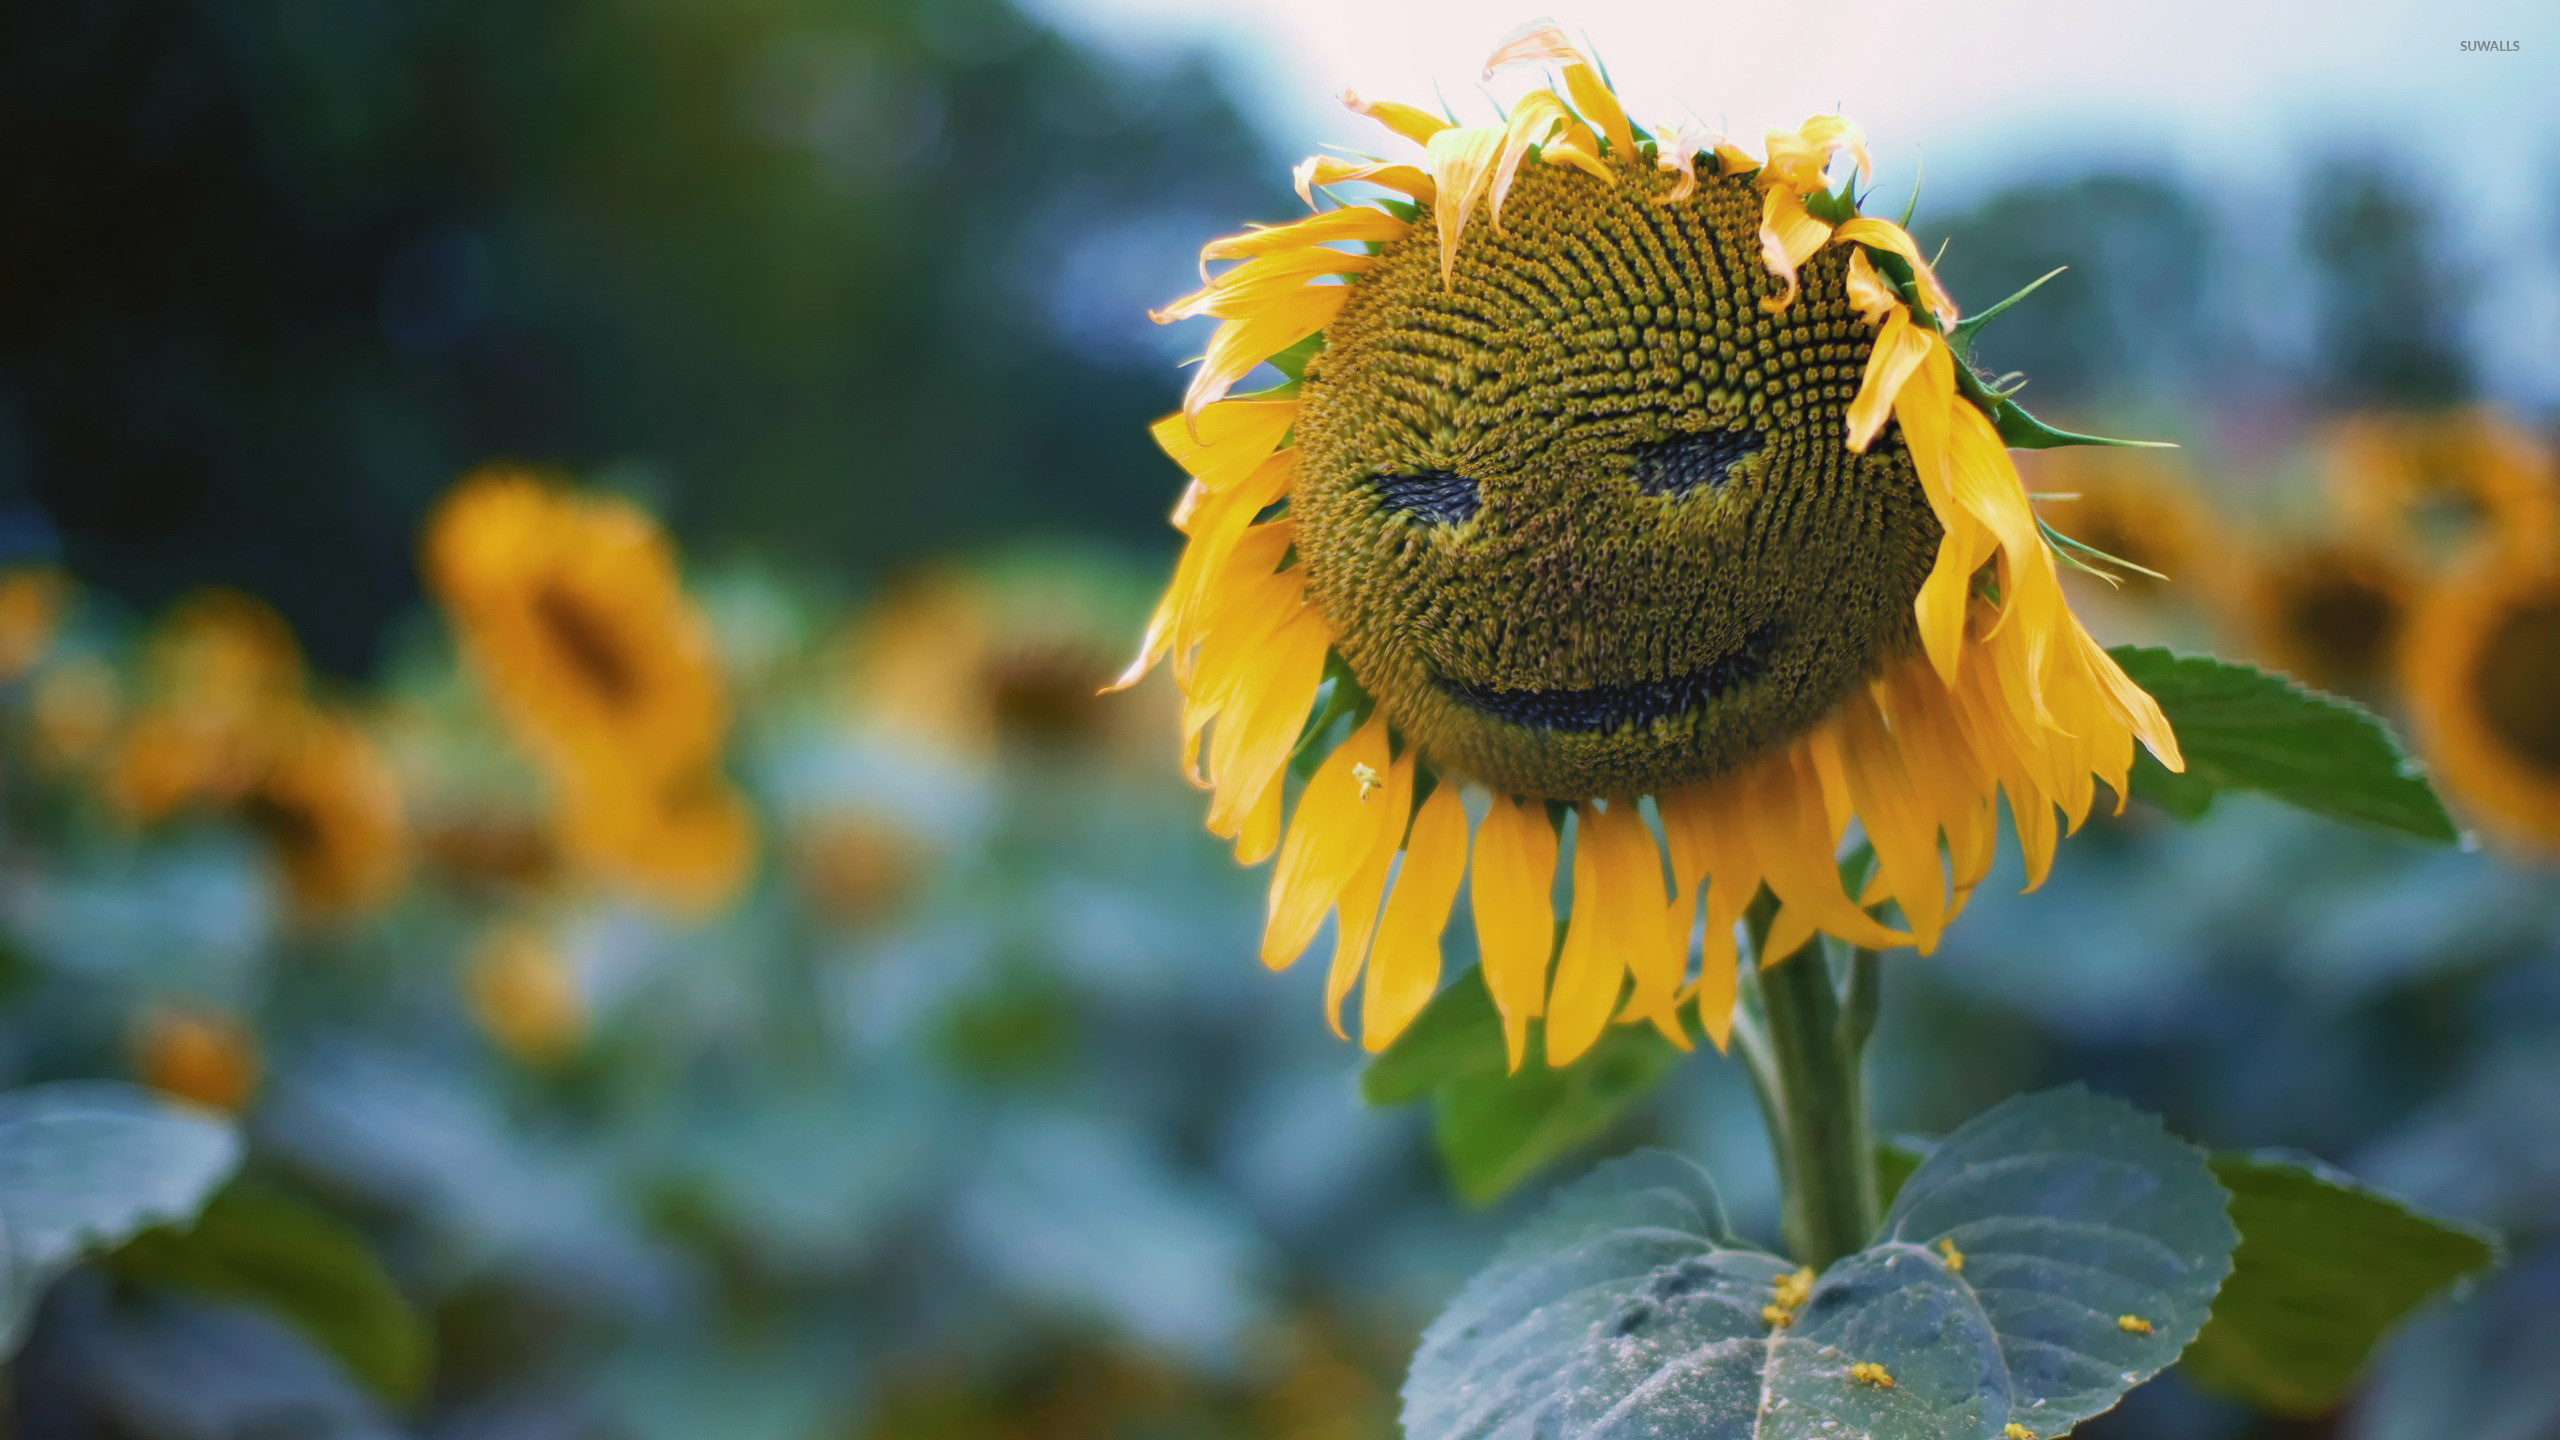 2560x1440 Smiling sunflower wallpaper